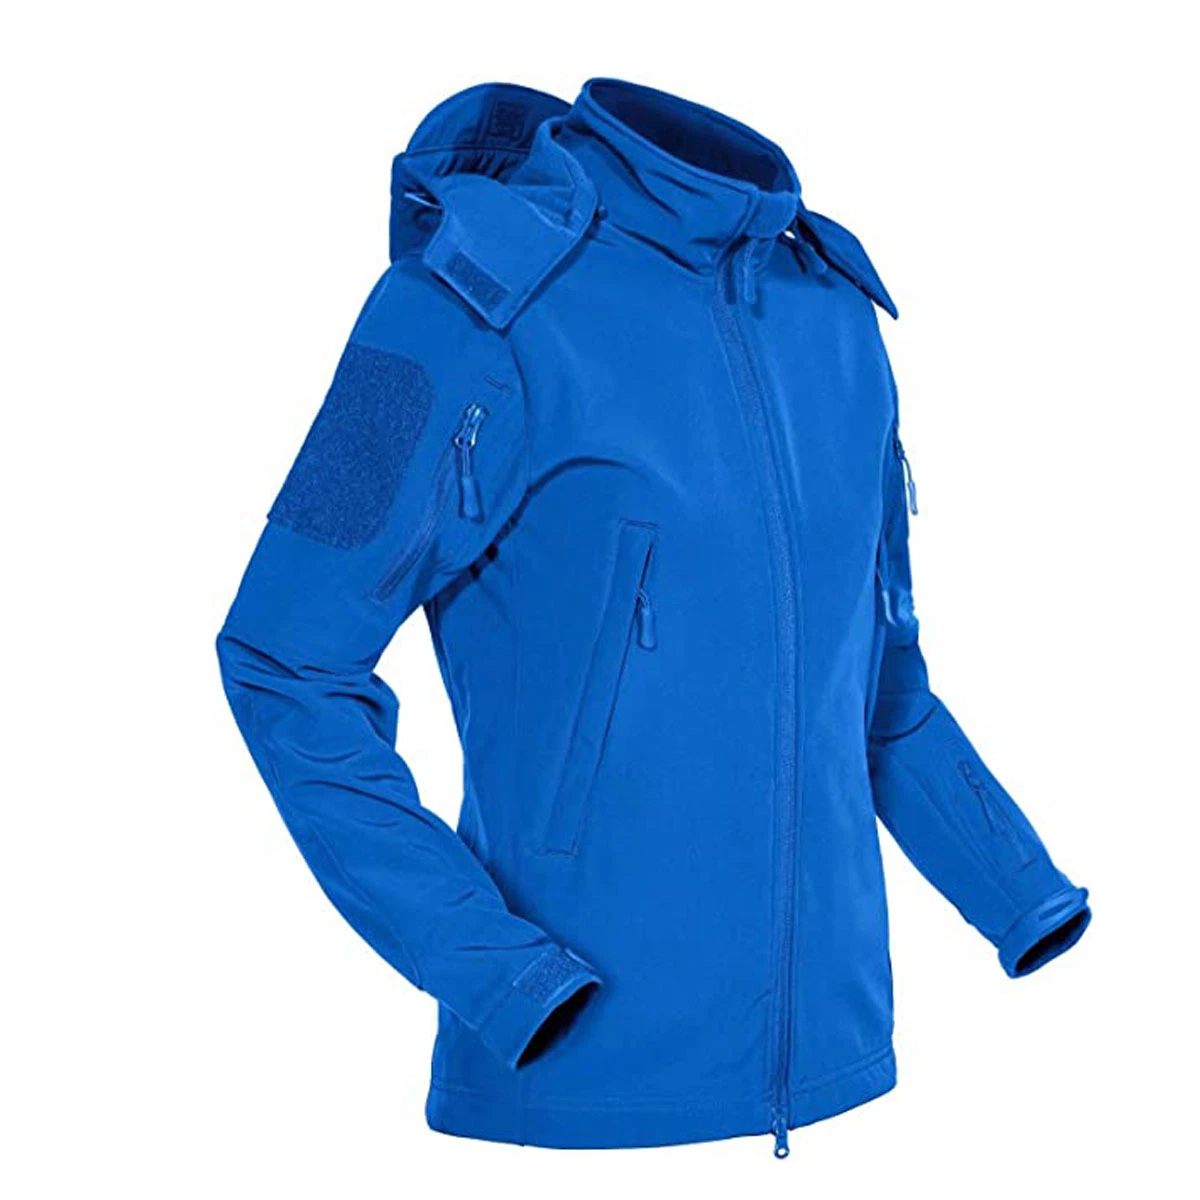 New Trendy Custom Ladies Winter Waterproof Jacket with Detachable Hood